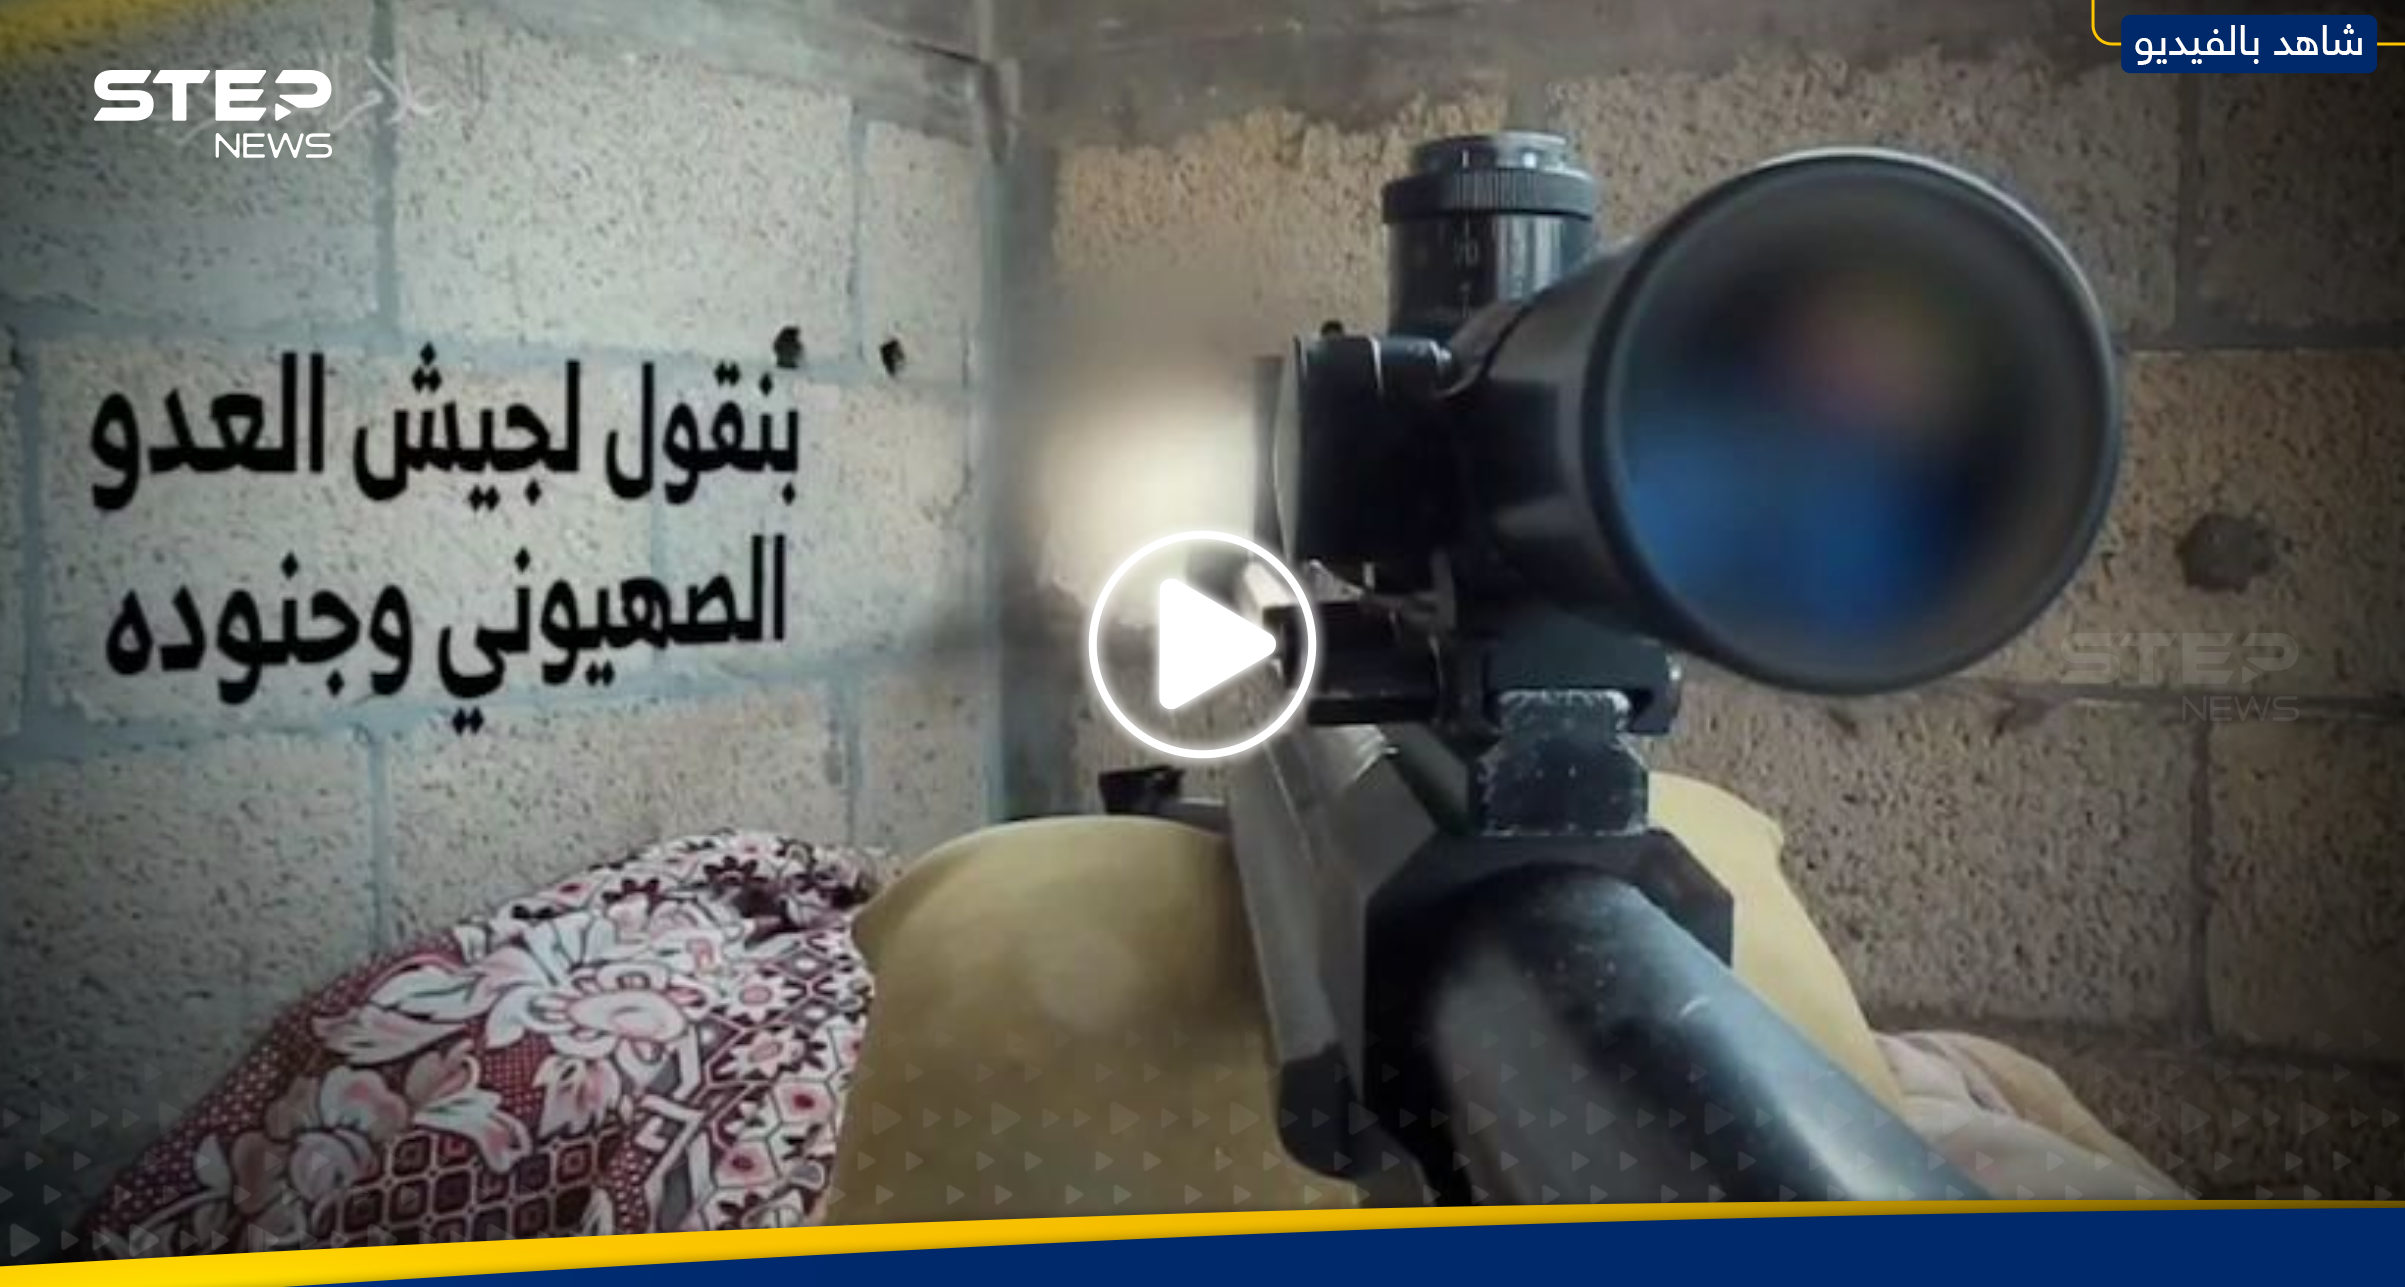 بالفيديو|| نصيدهم كالبط.. القسام تنشر لحظة قنص جندي إسرائيلي وتهدي العملية لزعيم الحوثيين